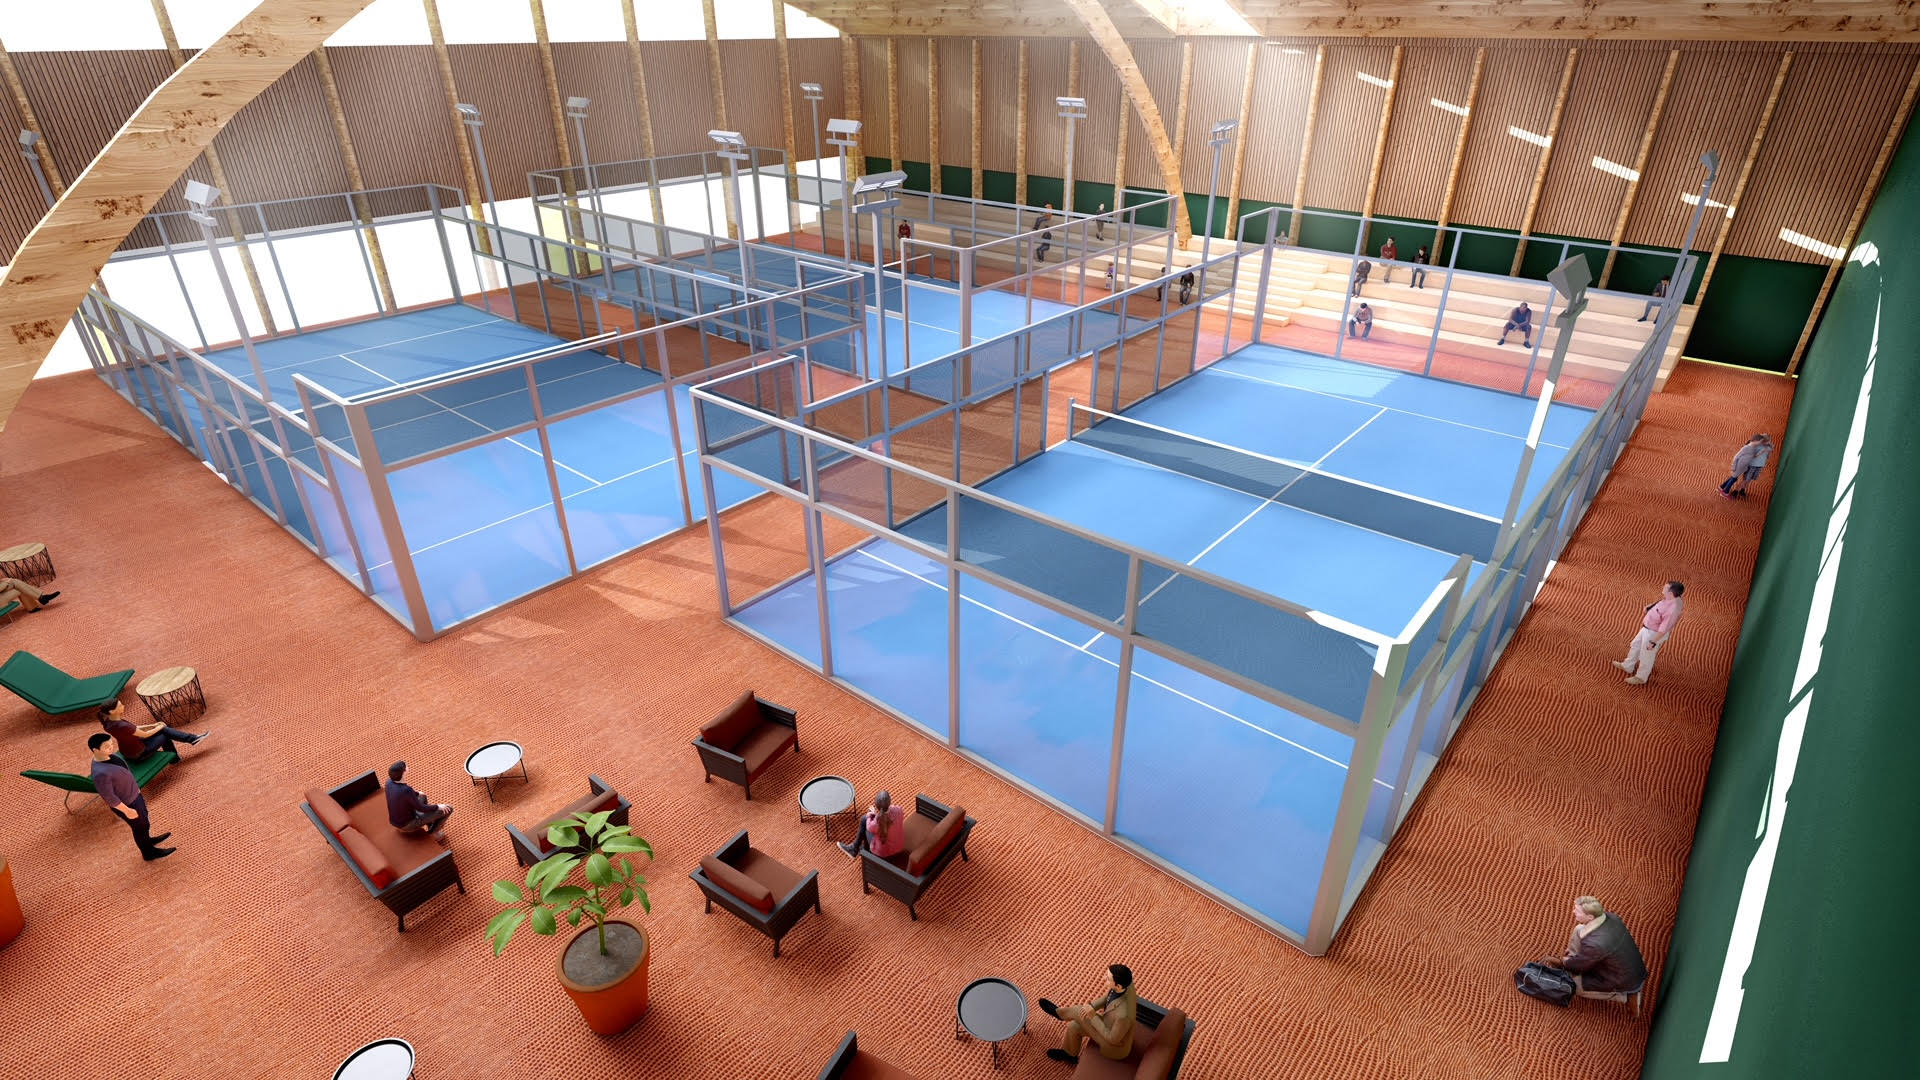 Grenoble Tennis lanserar sitt projekt med 7 banor!